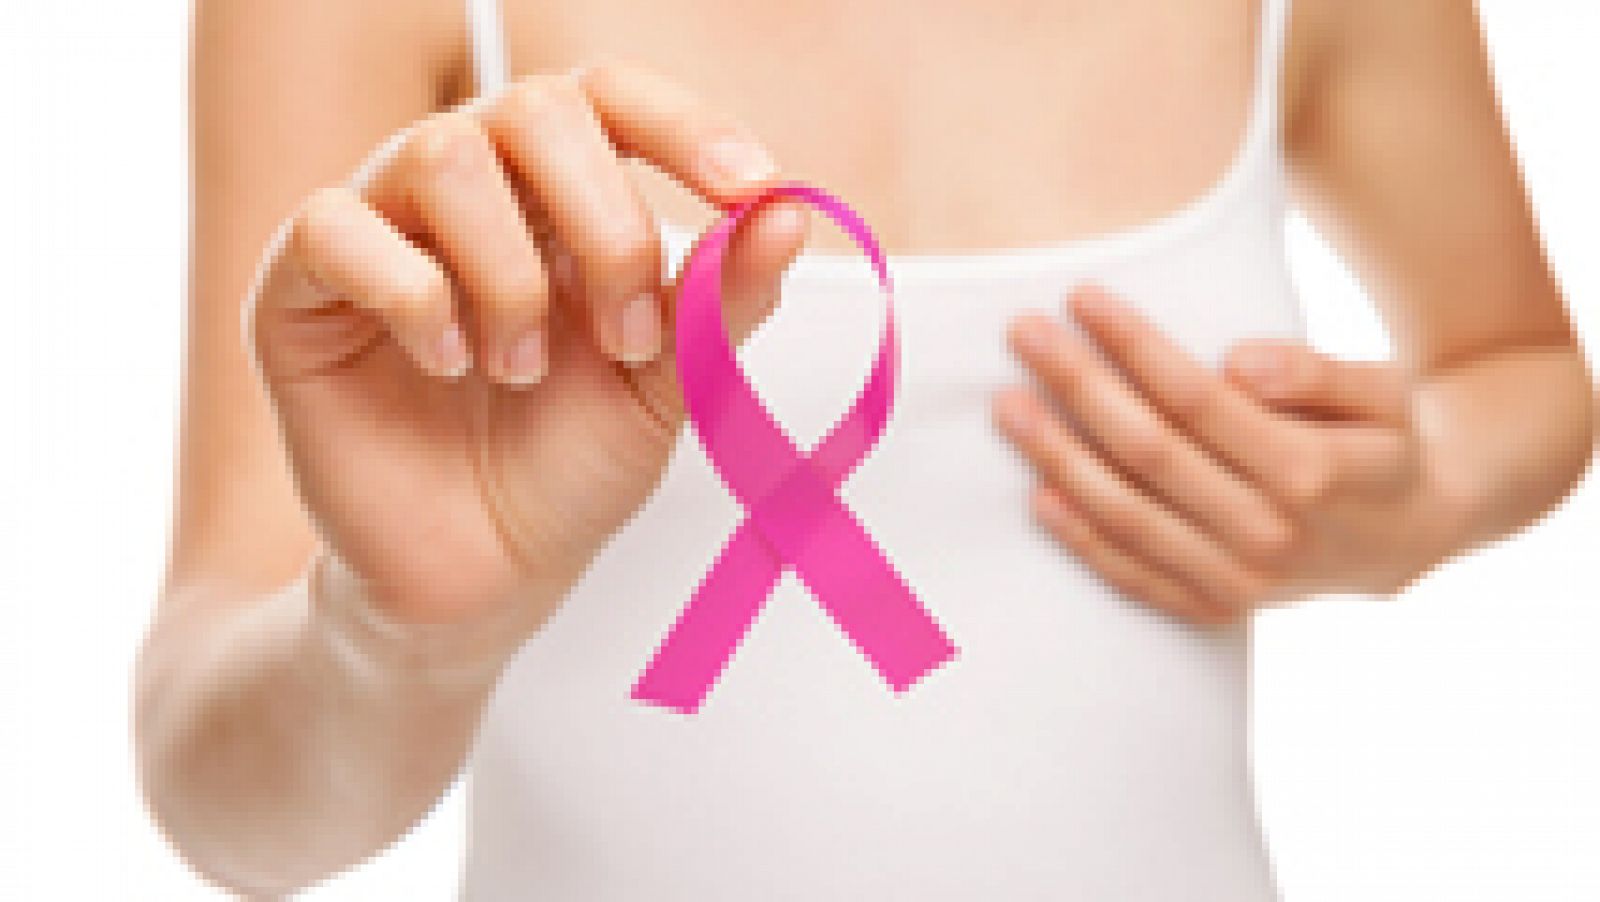 Saber Vivir - Prevención  y tratamiento de cáncer de mama